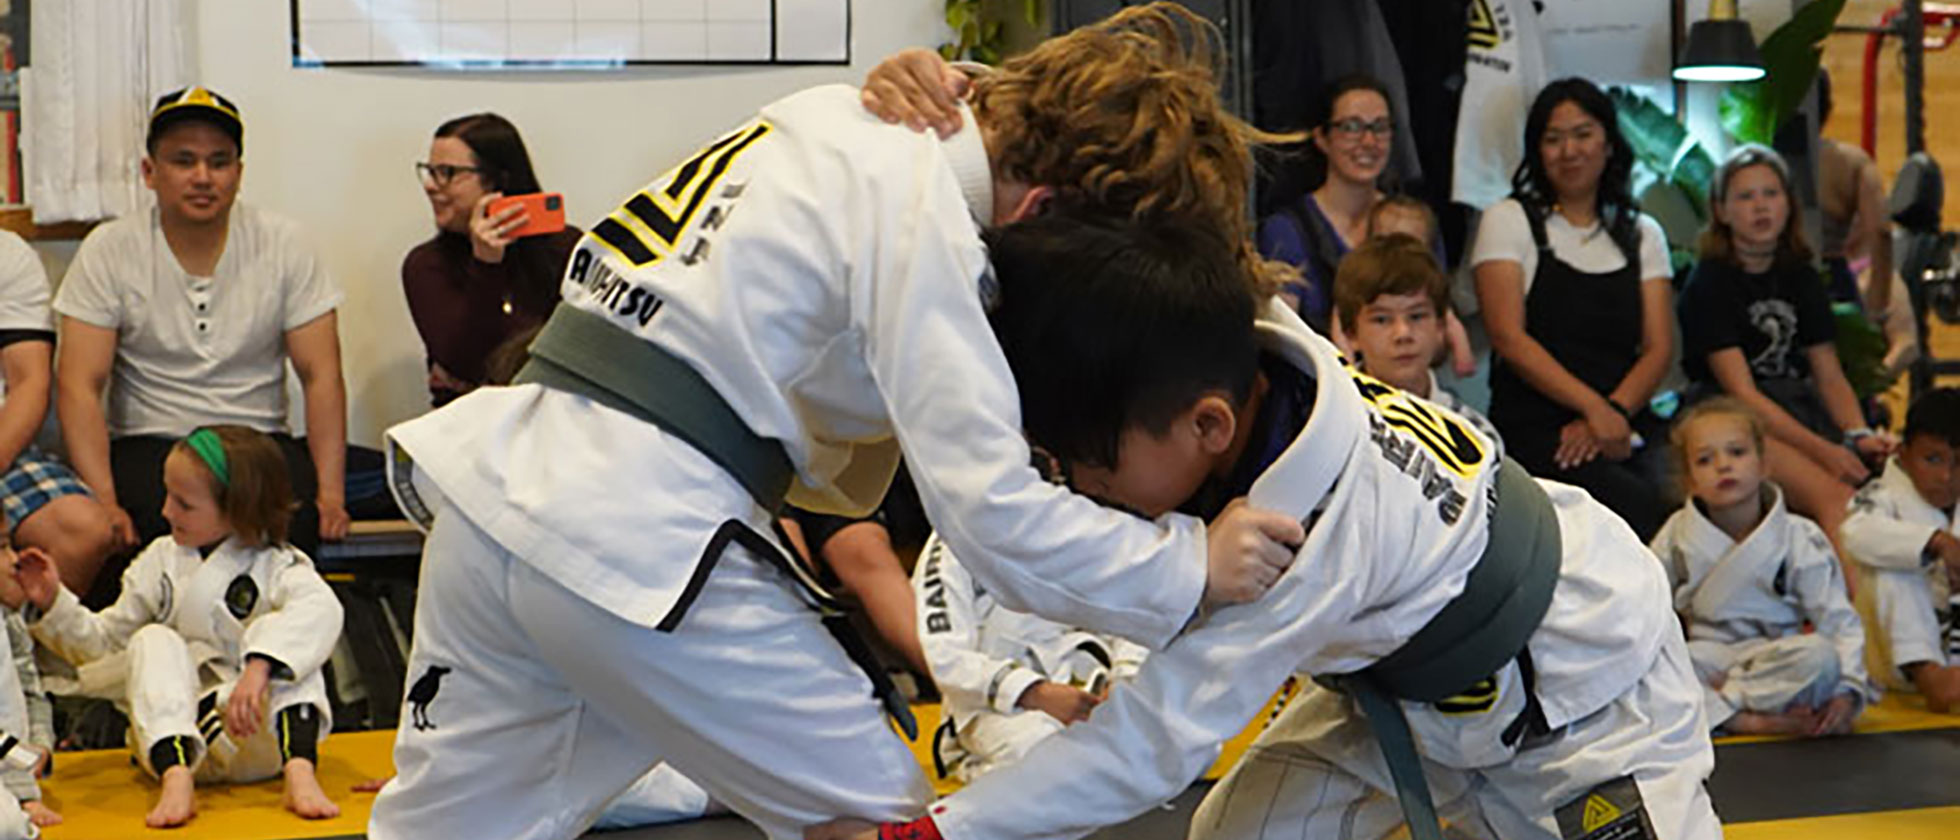 Brazilian Jiu-Jitsu In Edmonton, Canada for Kids Ages 8-12